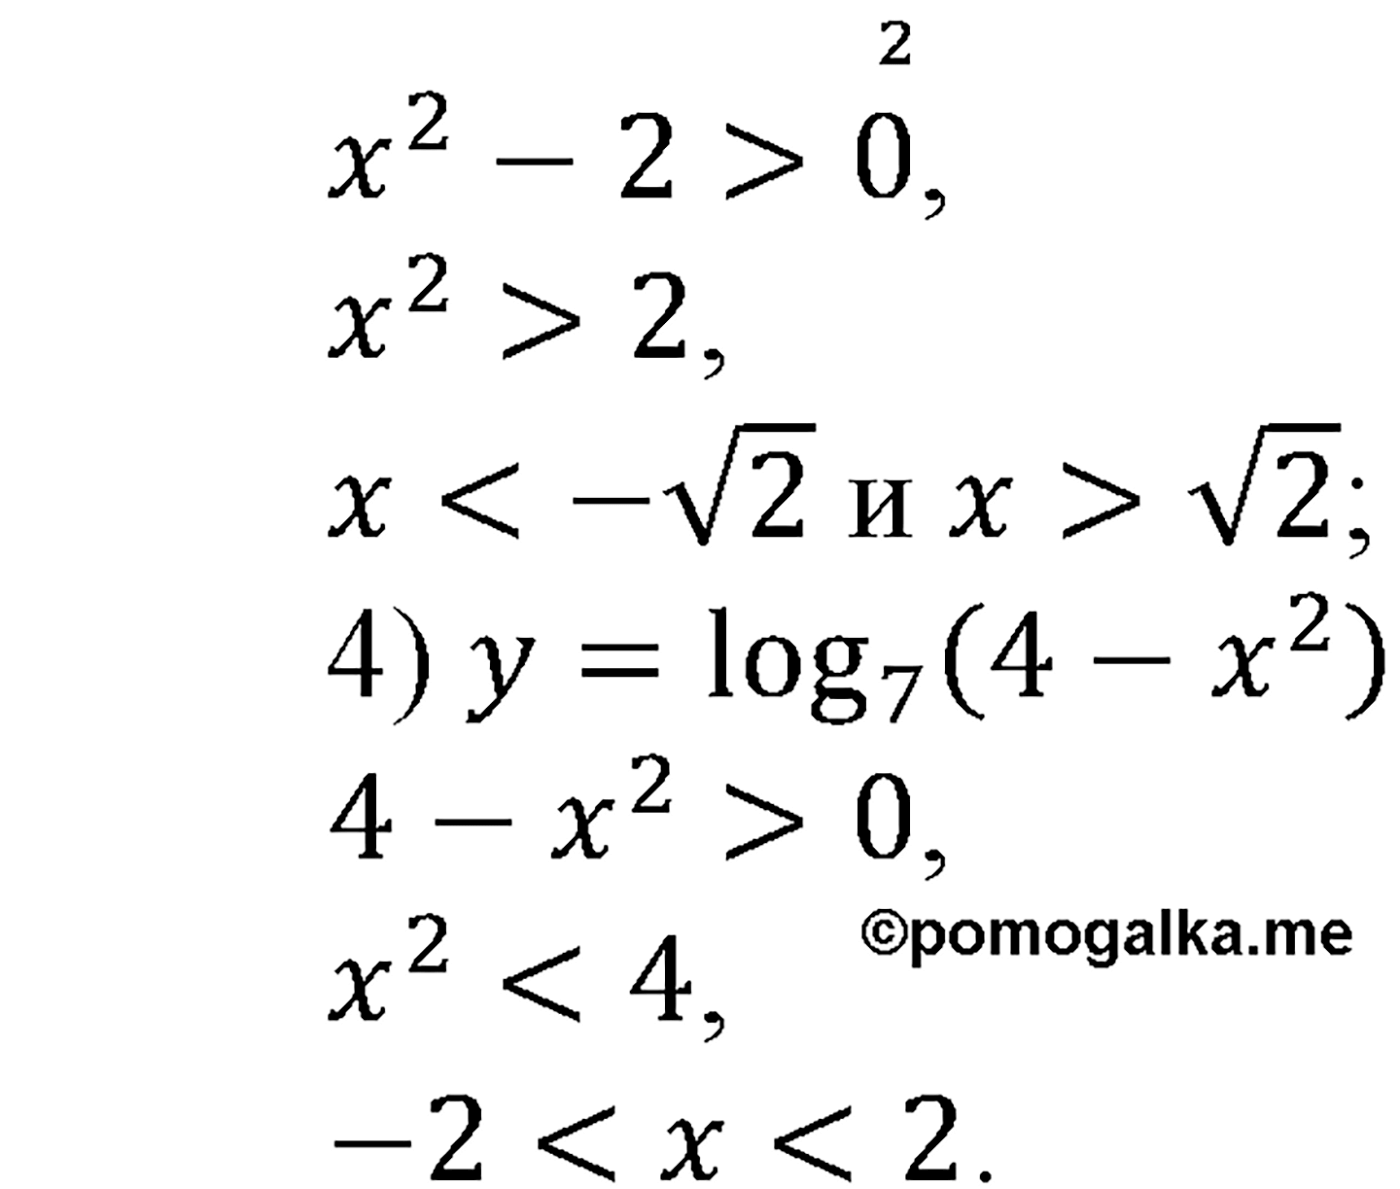 разбор задачи №354 по алгебре за 10-11 класс из учебника Алимова, Колягина